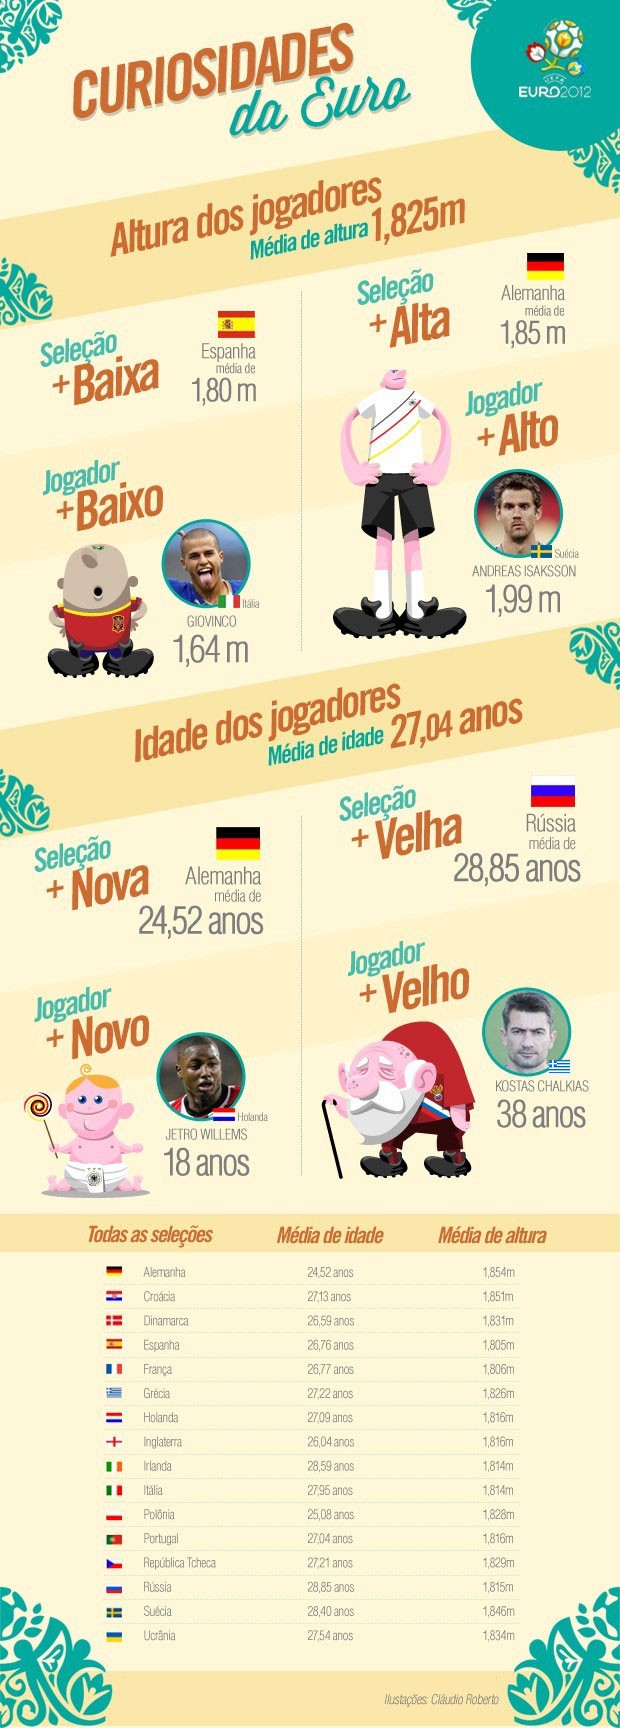 info curiosidades da Eurocopa 2012 (Foto: Editoria de arte / Globoesporte.com)